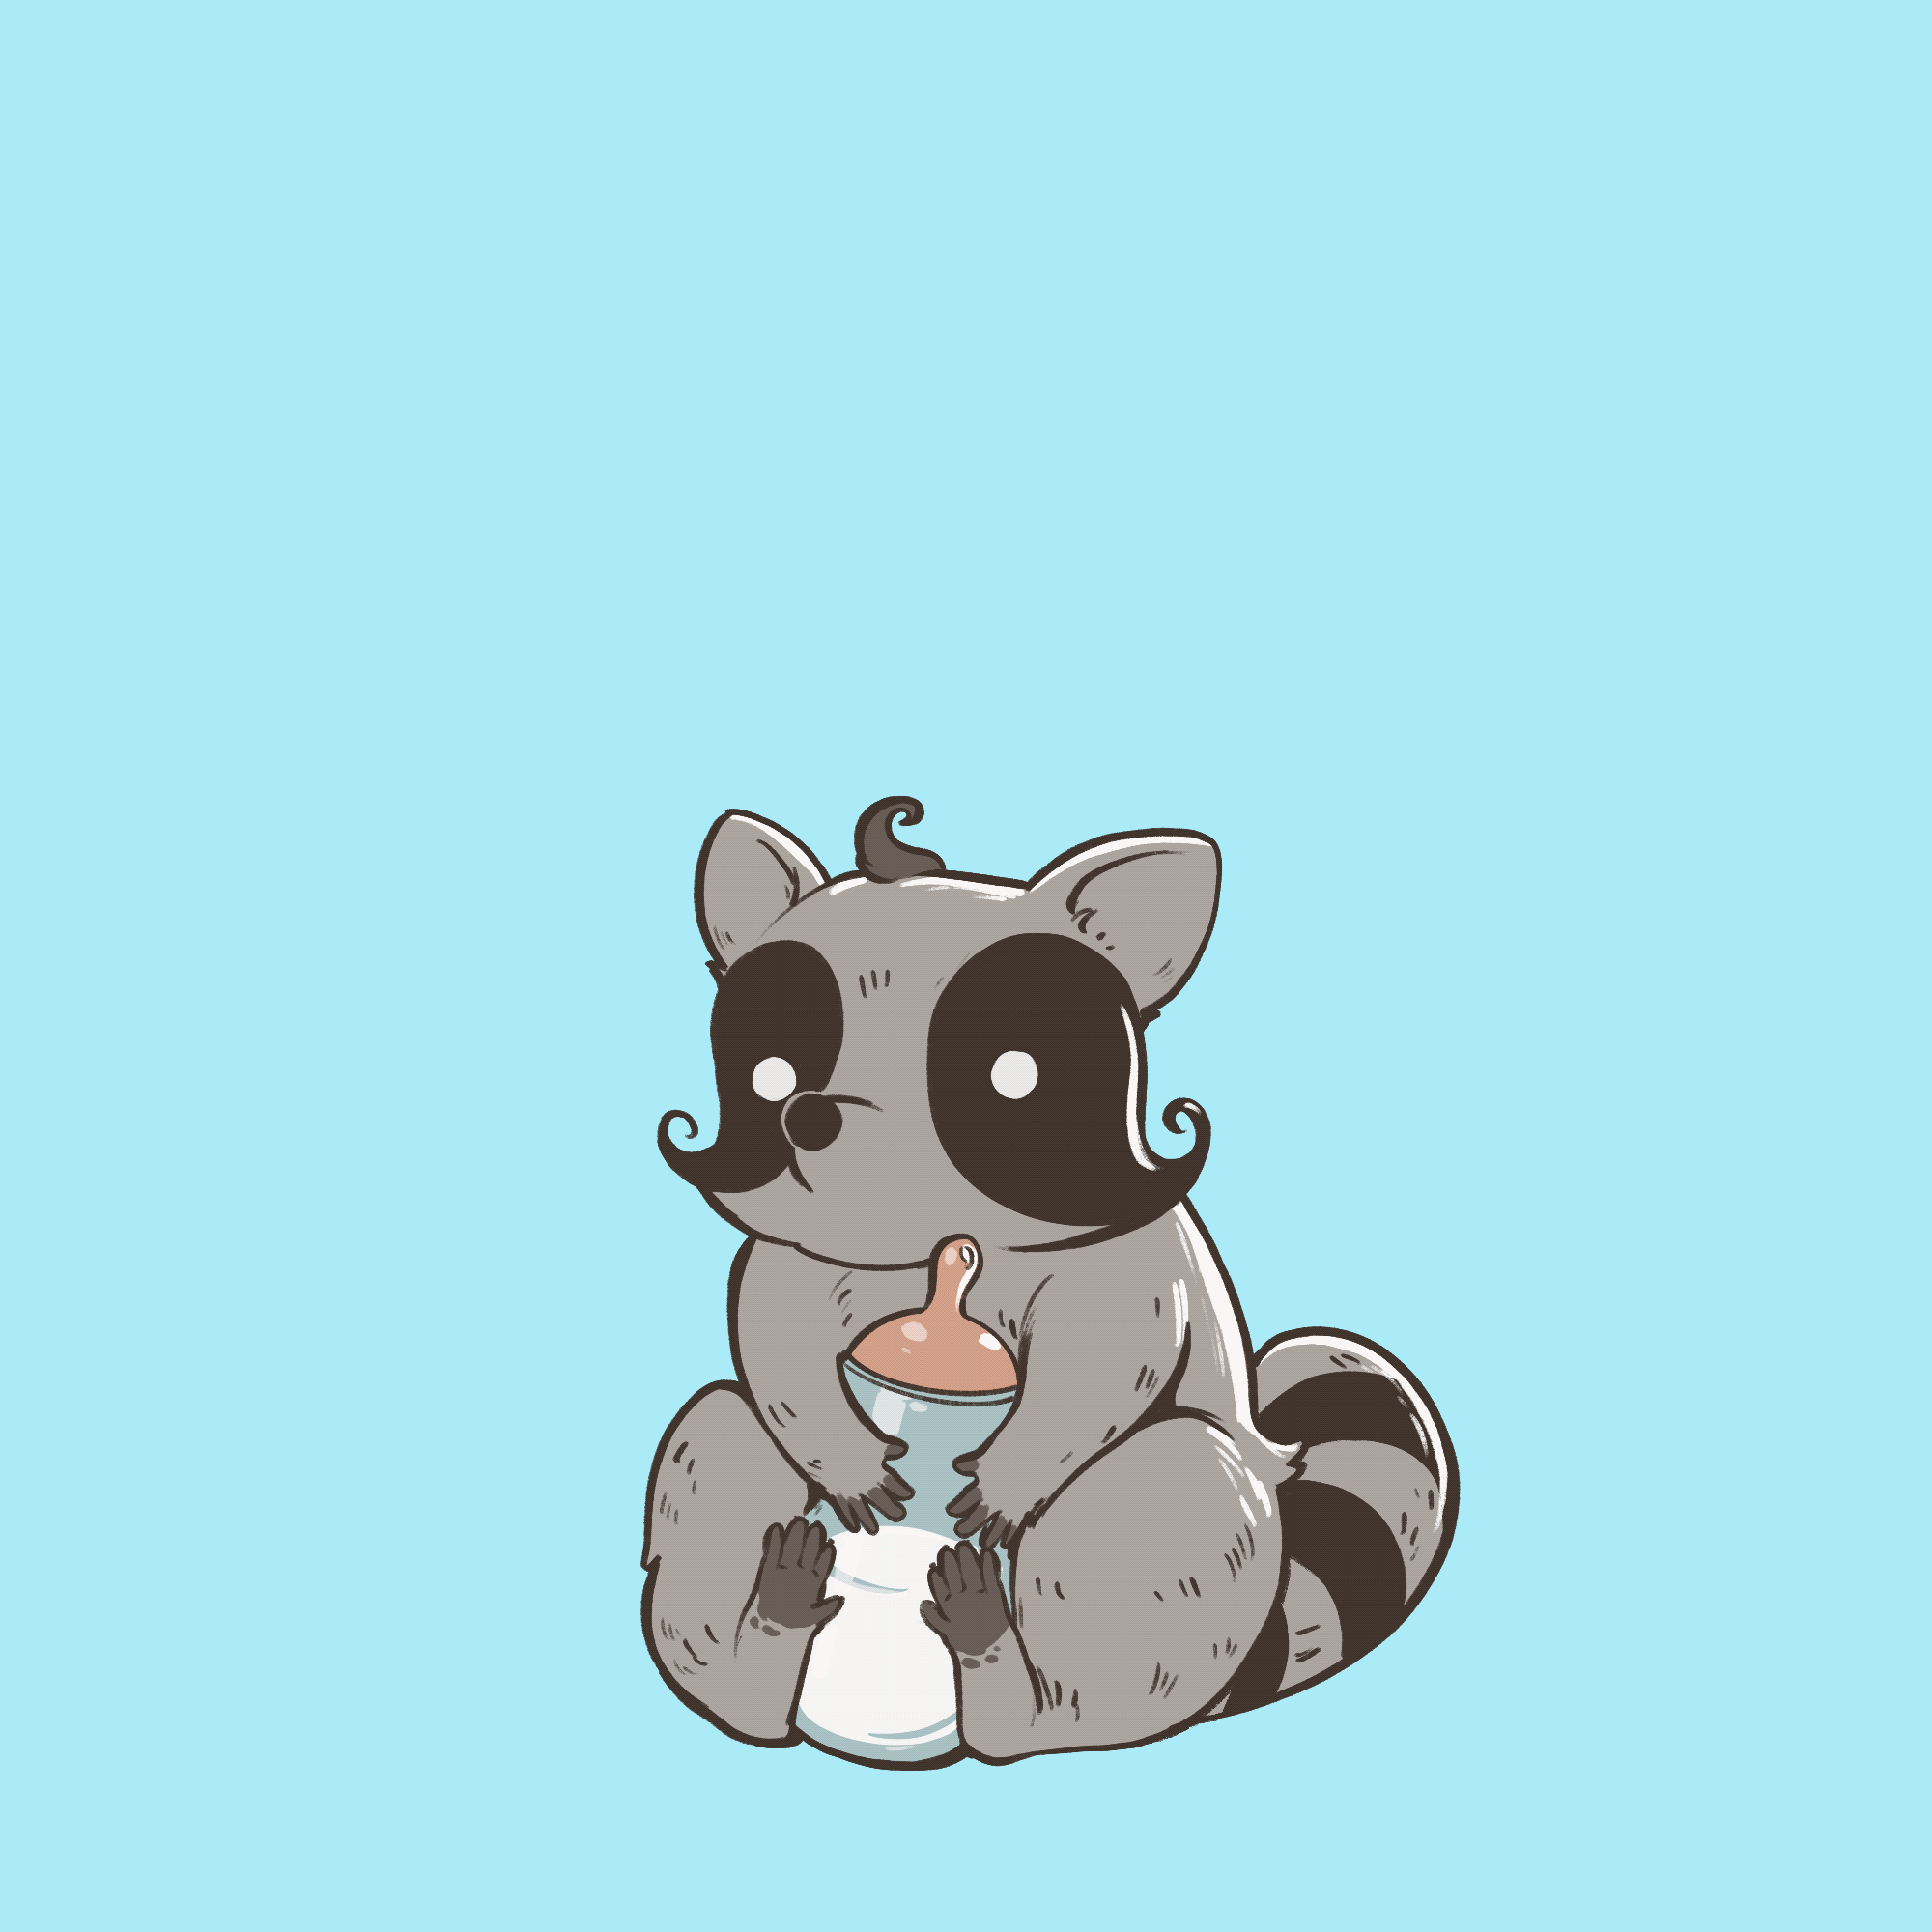 01 Baby Raccoon